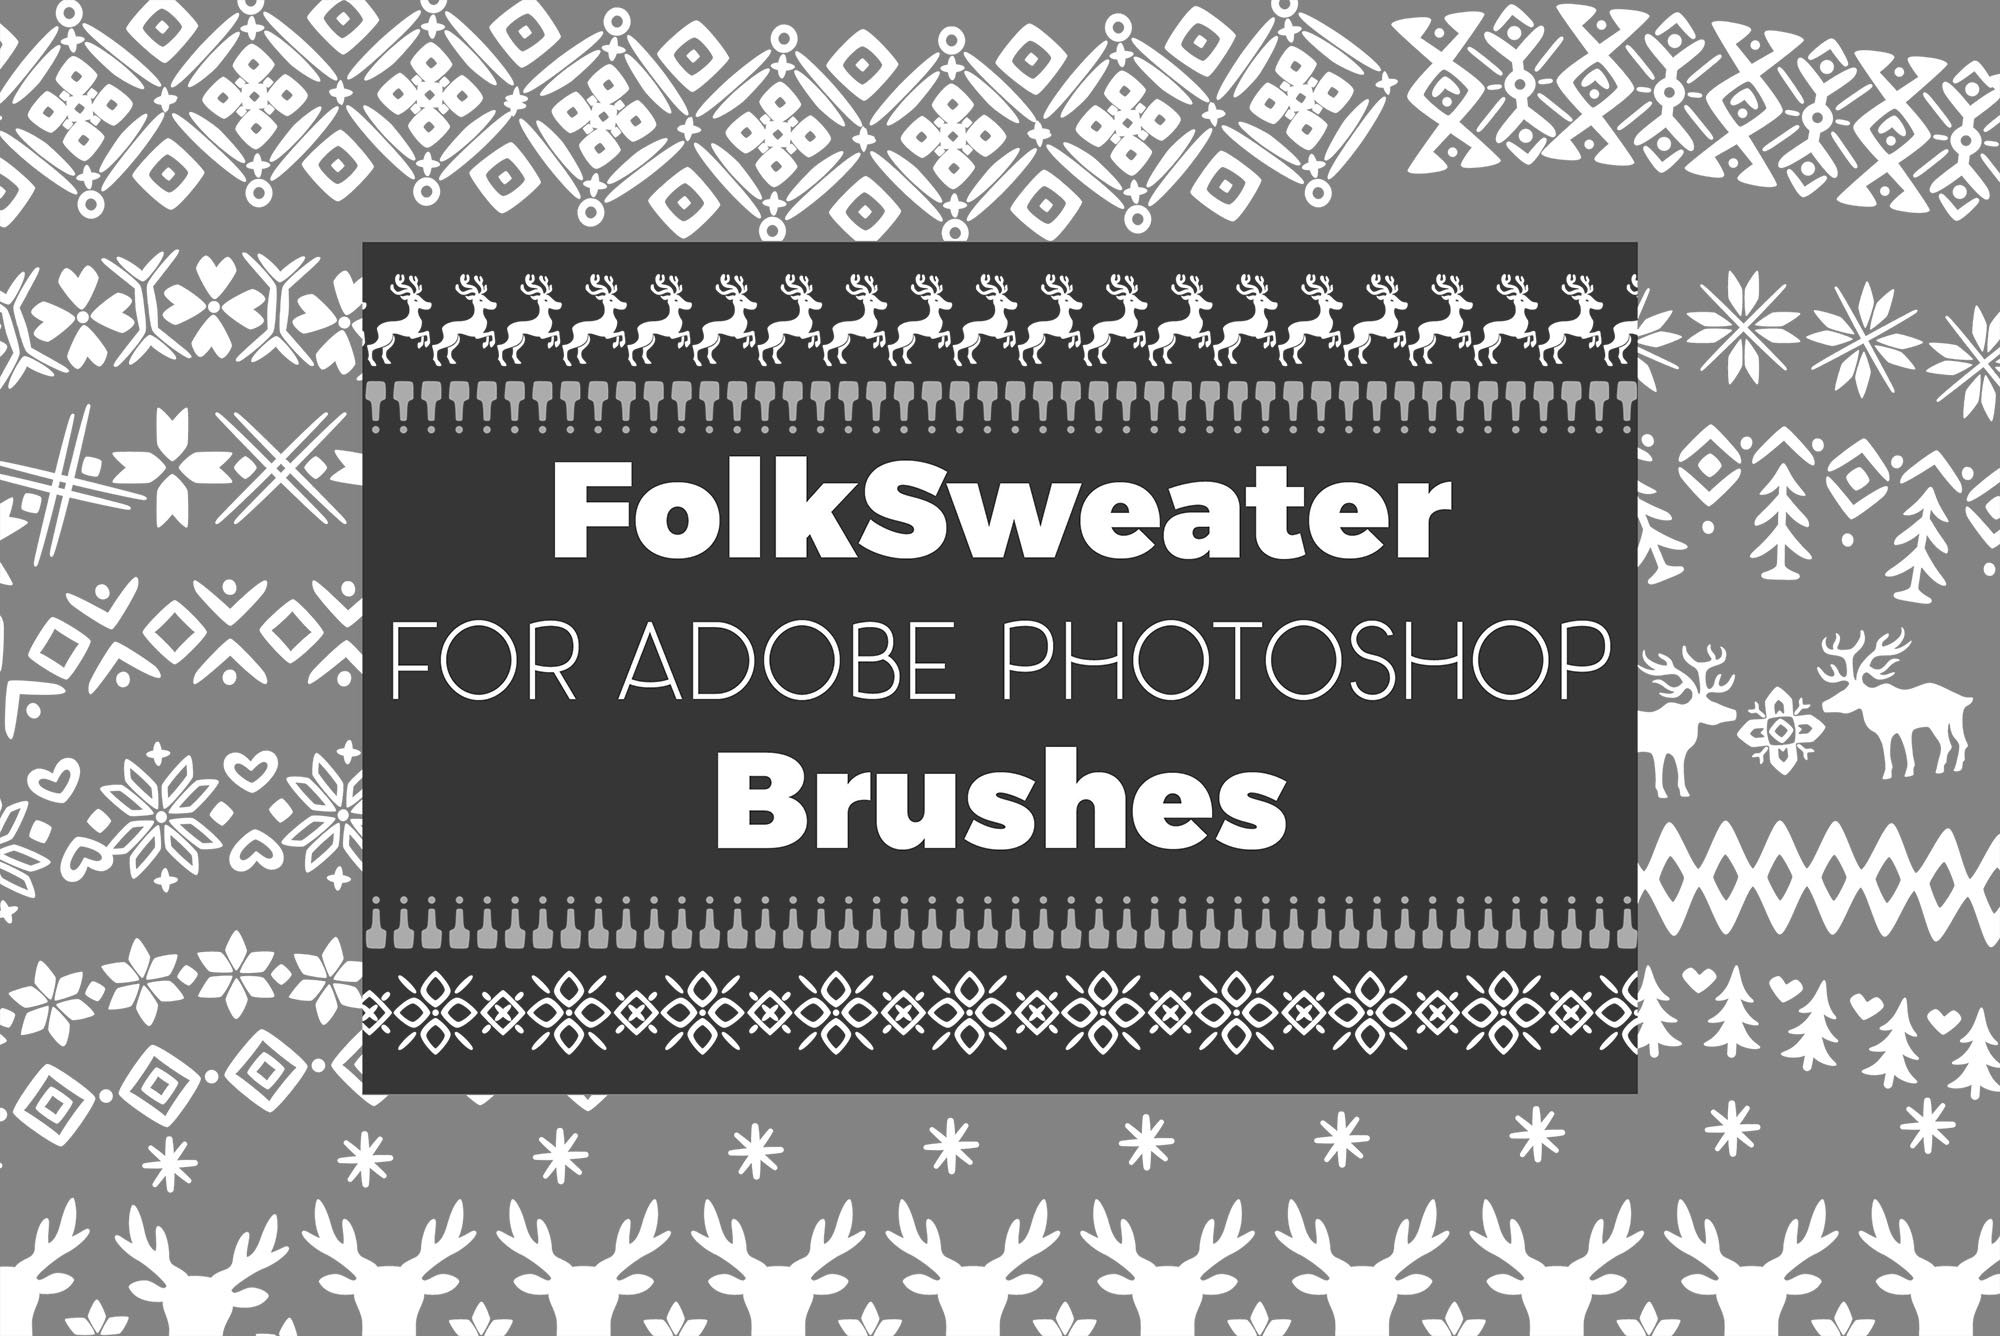 Folk Sweater Brushes for Photoshopcover image.